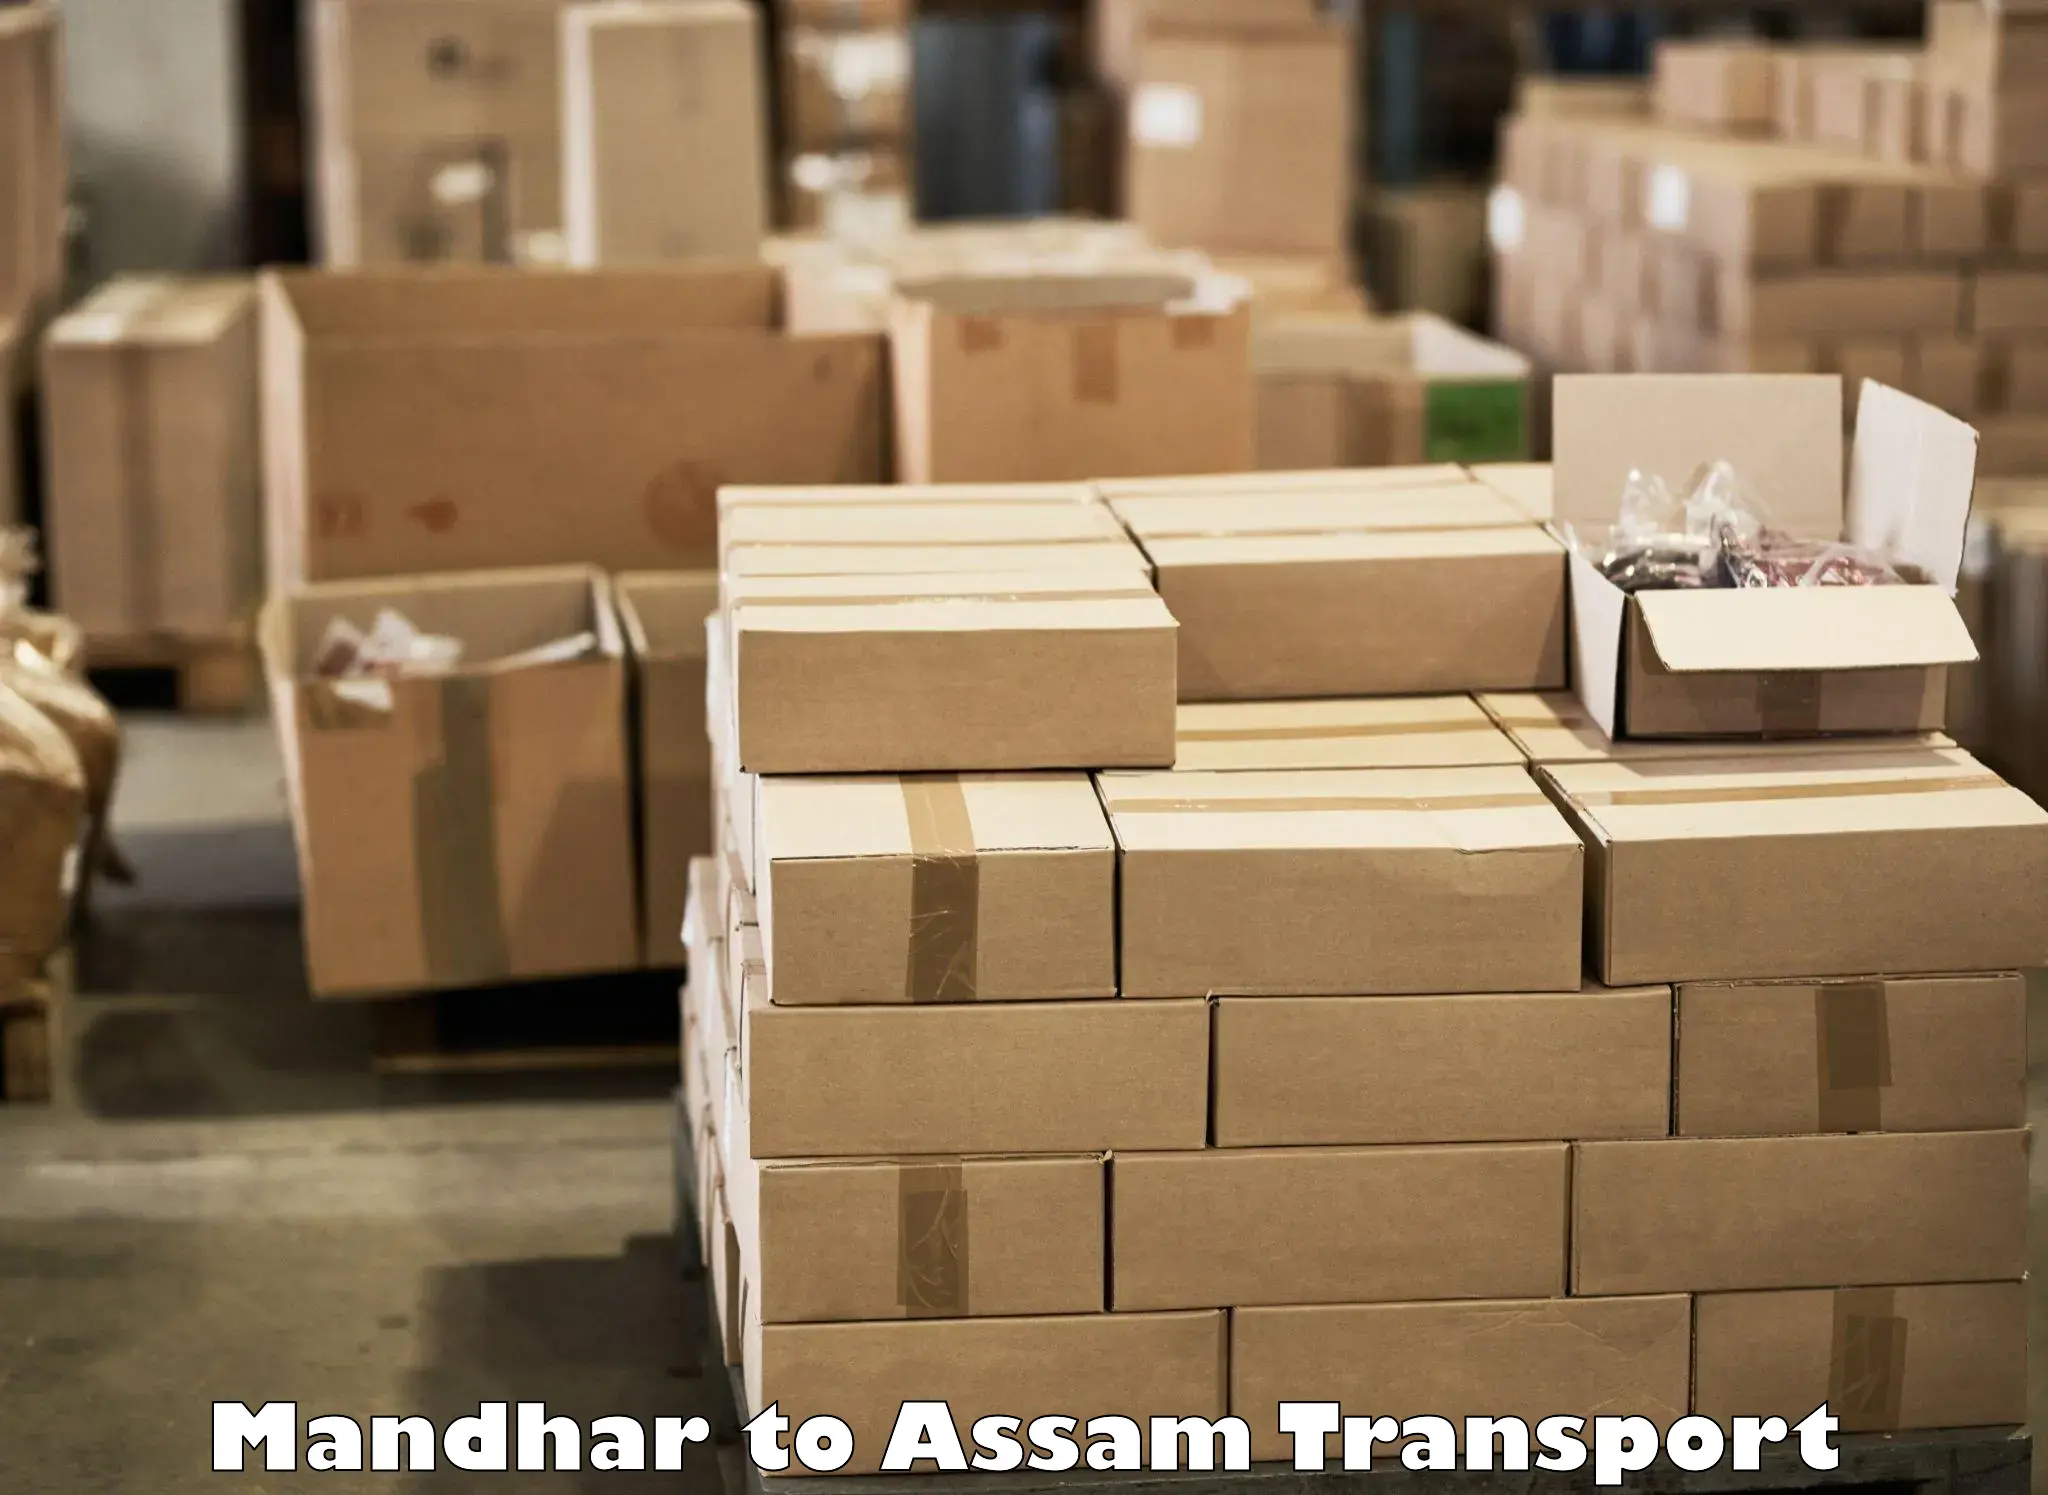 Furniture transport service Mandhar to Chhaygaon